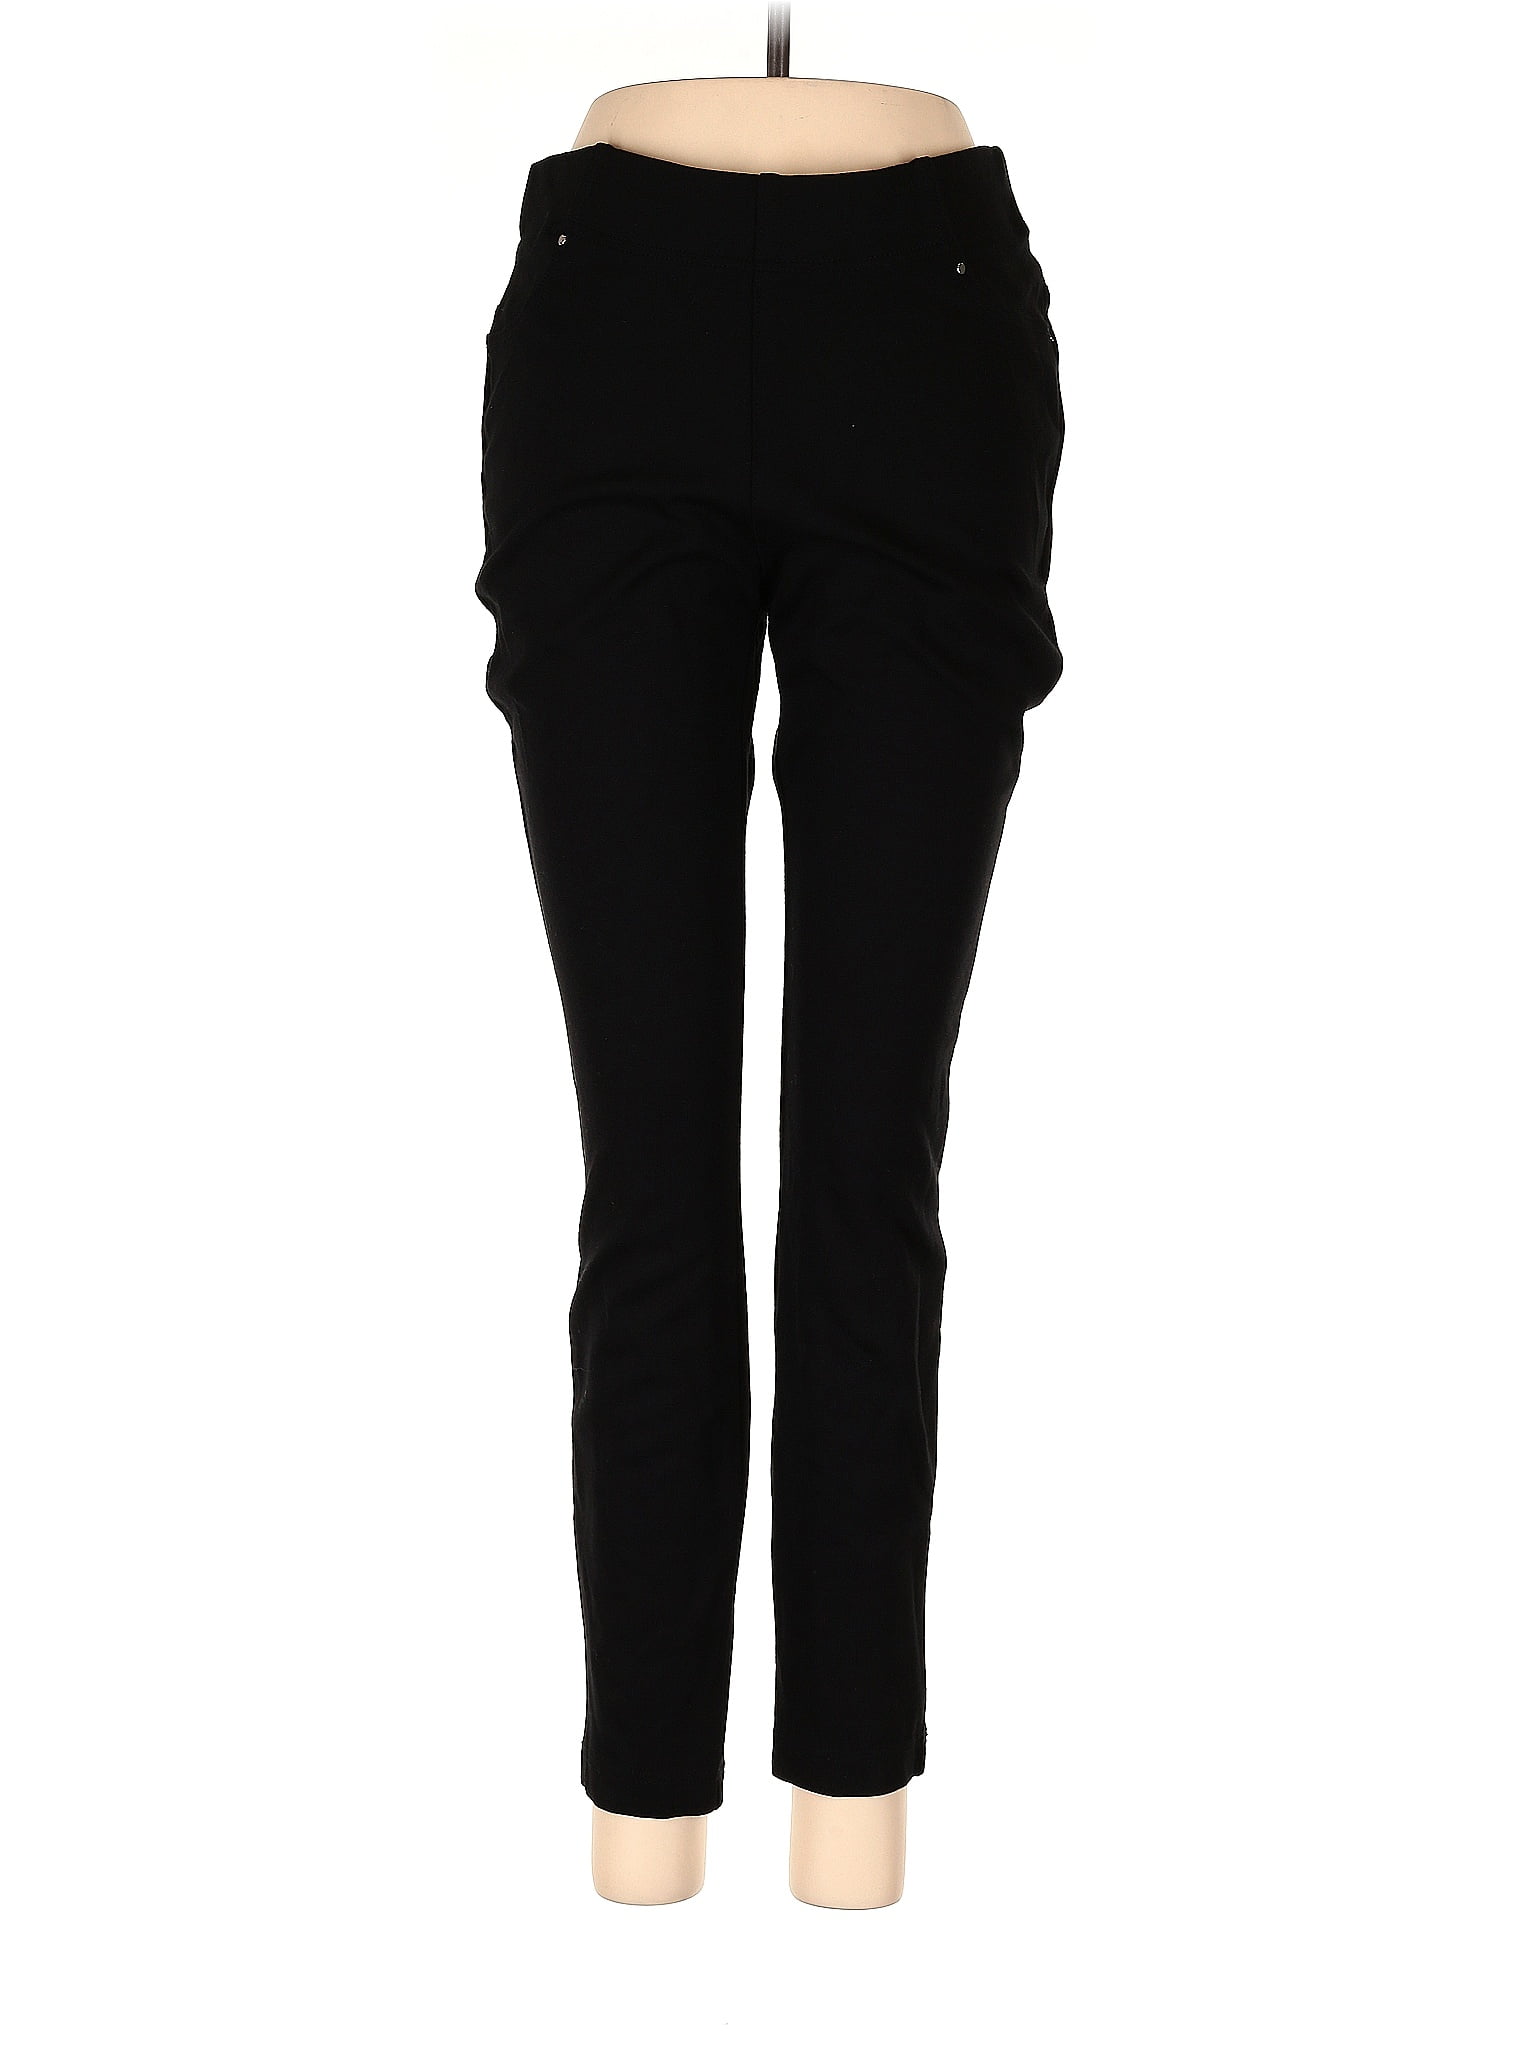 Mondetta Black Active Pants Size M - 72% off